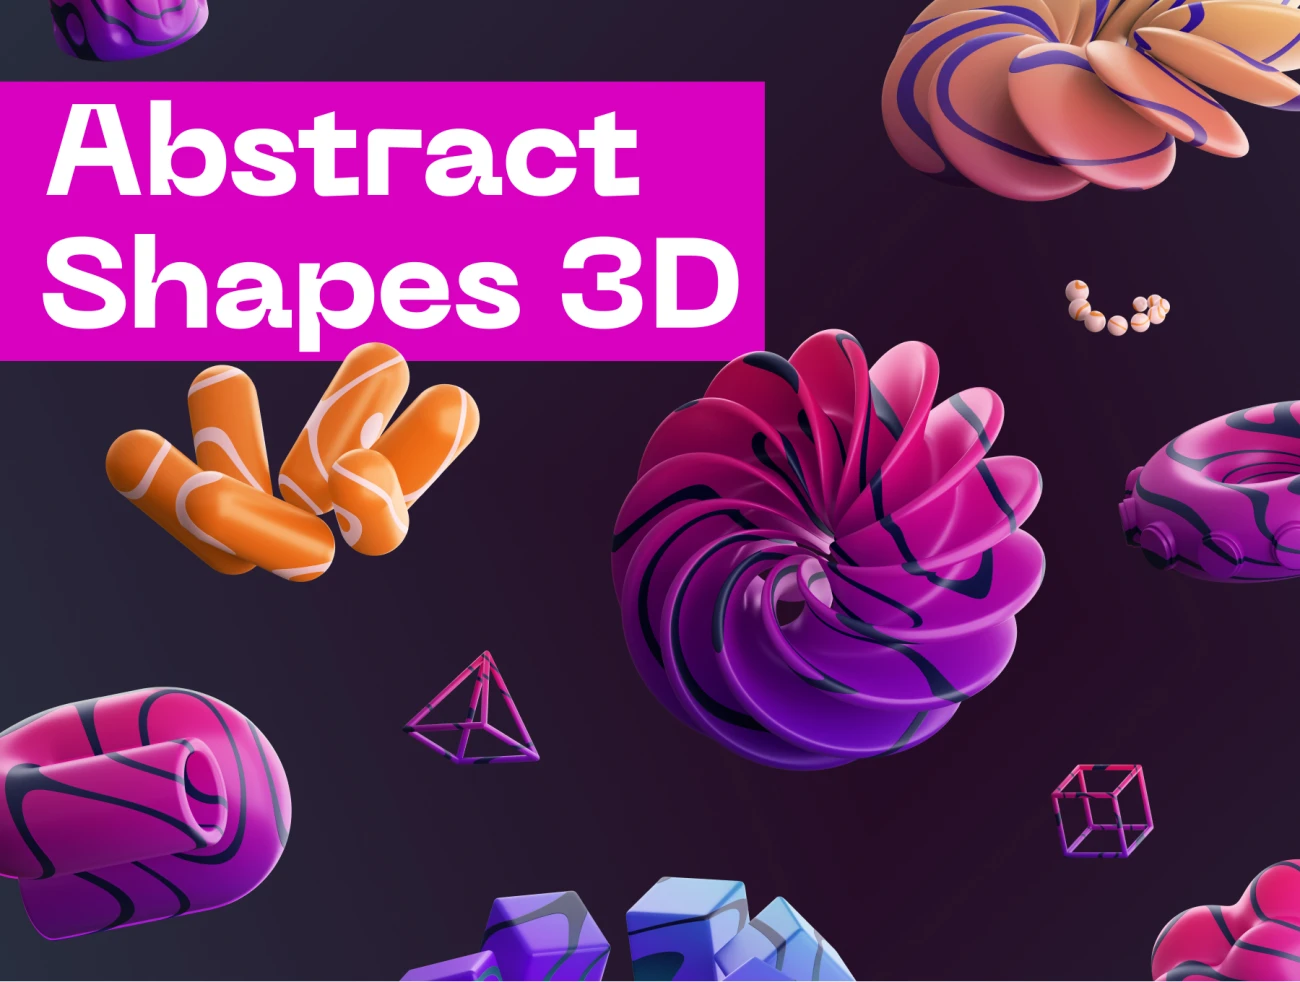 32款抽象立体3D图形模型素材 Abstract Shapes 3D .blender .figma插图1